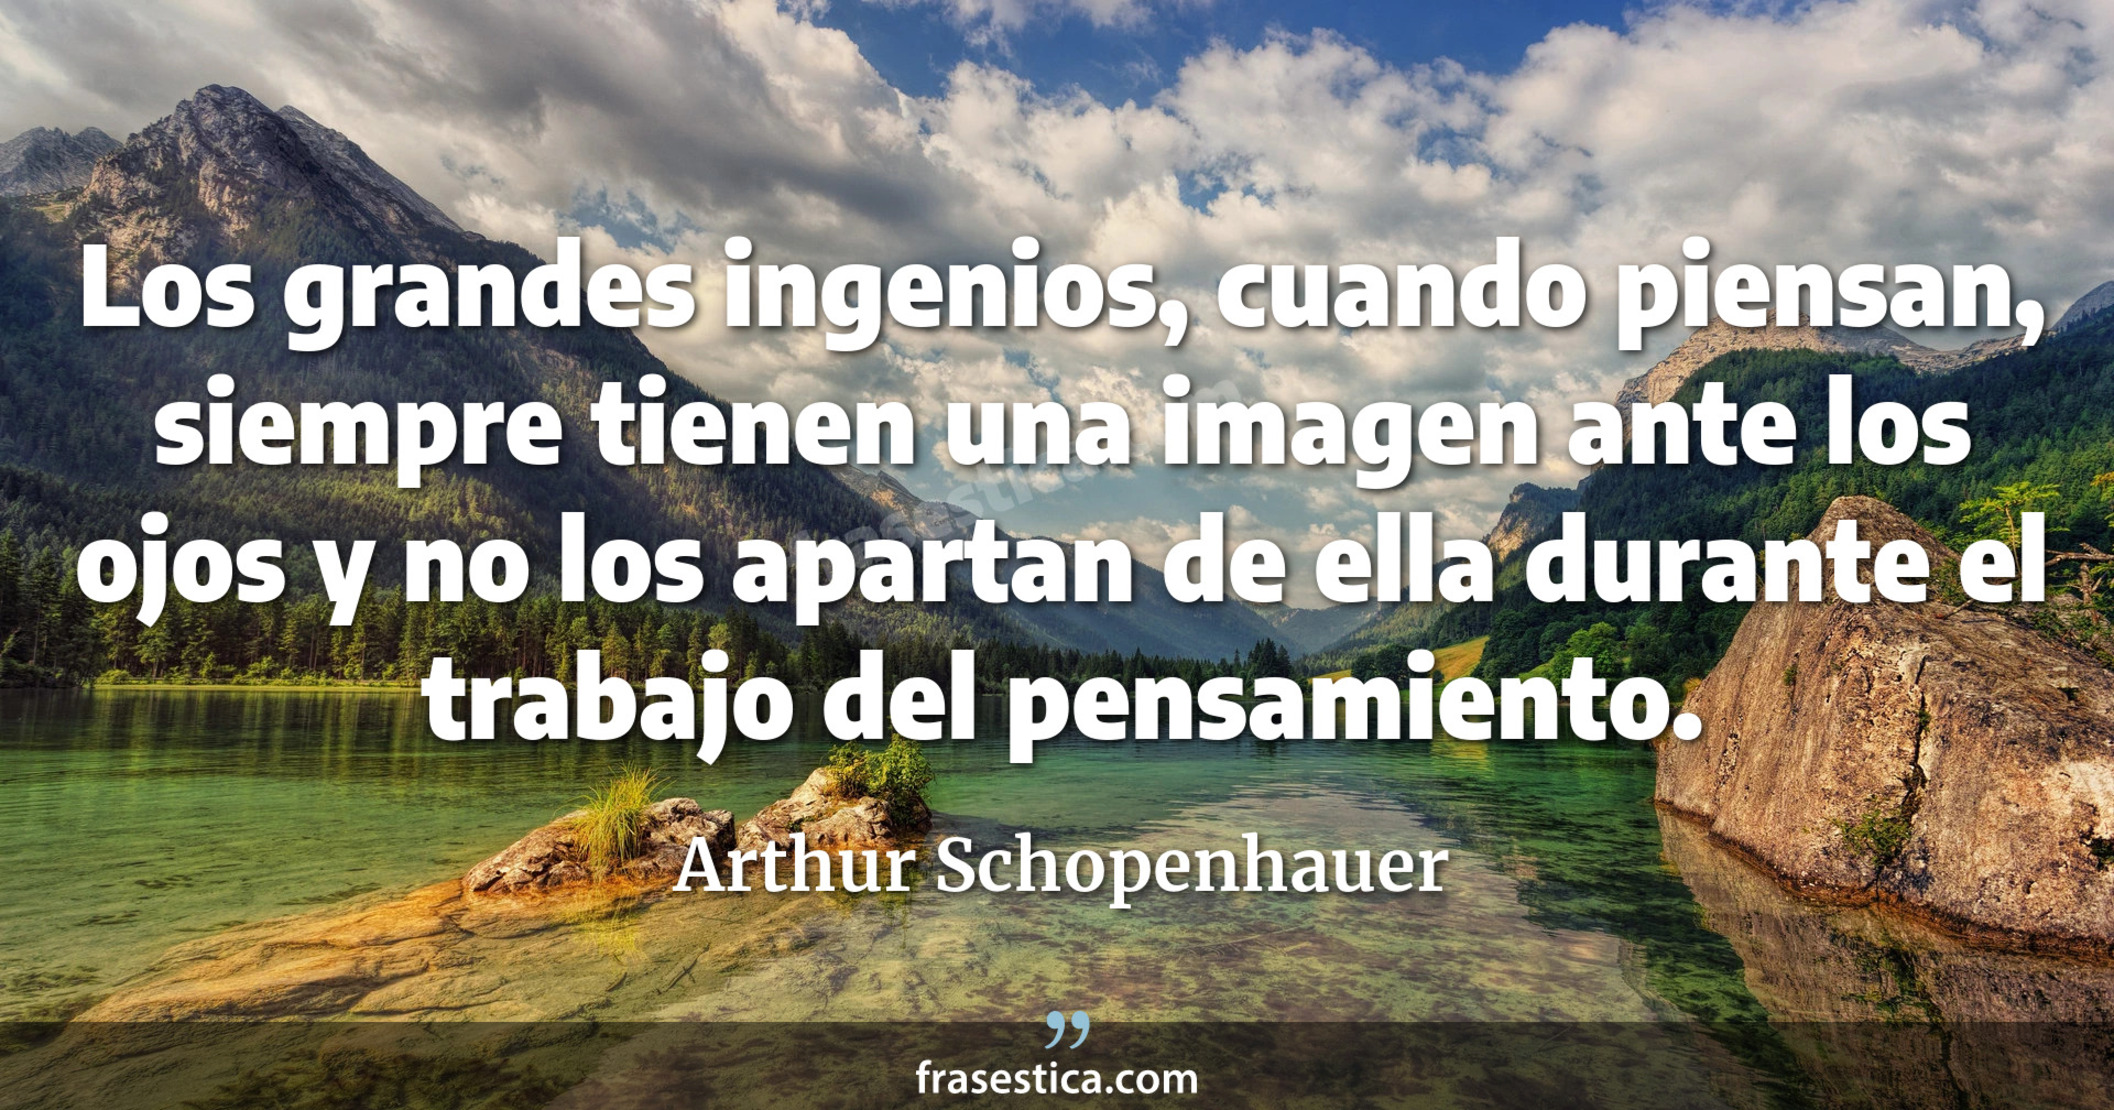 Los grandes ingenios, cuando piensan, siempre tienen una imagen ante los ojos y no los apartan de ella durante el trabajo del pensamiento. - Arthur Schopenhauer